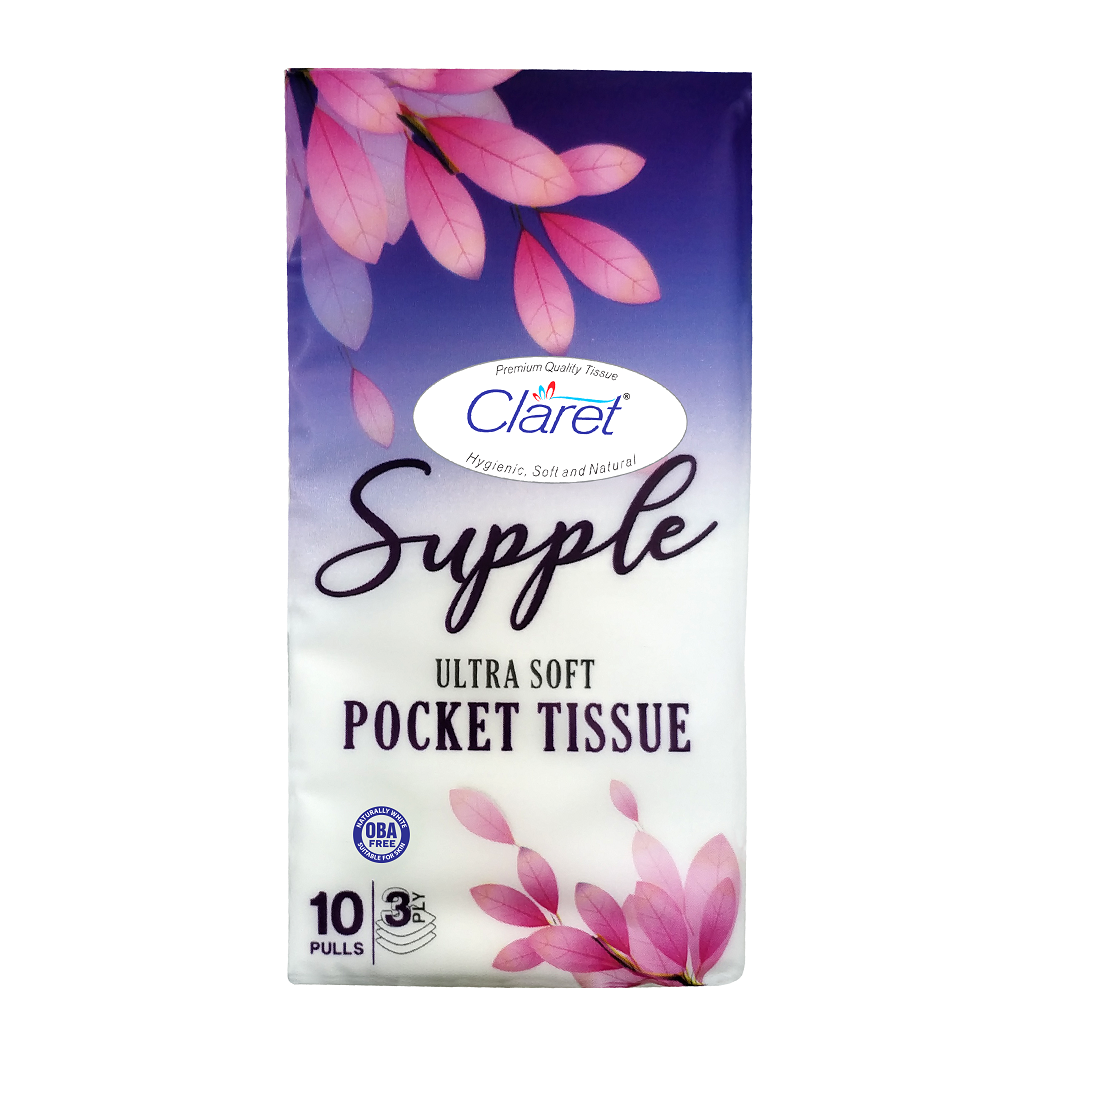 Claret Supple Ultra Soft Pocket Tissue (10 Pulls, 3 Ply)